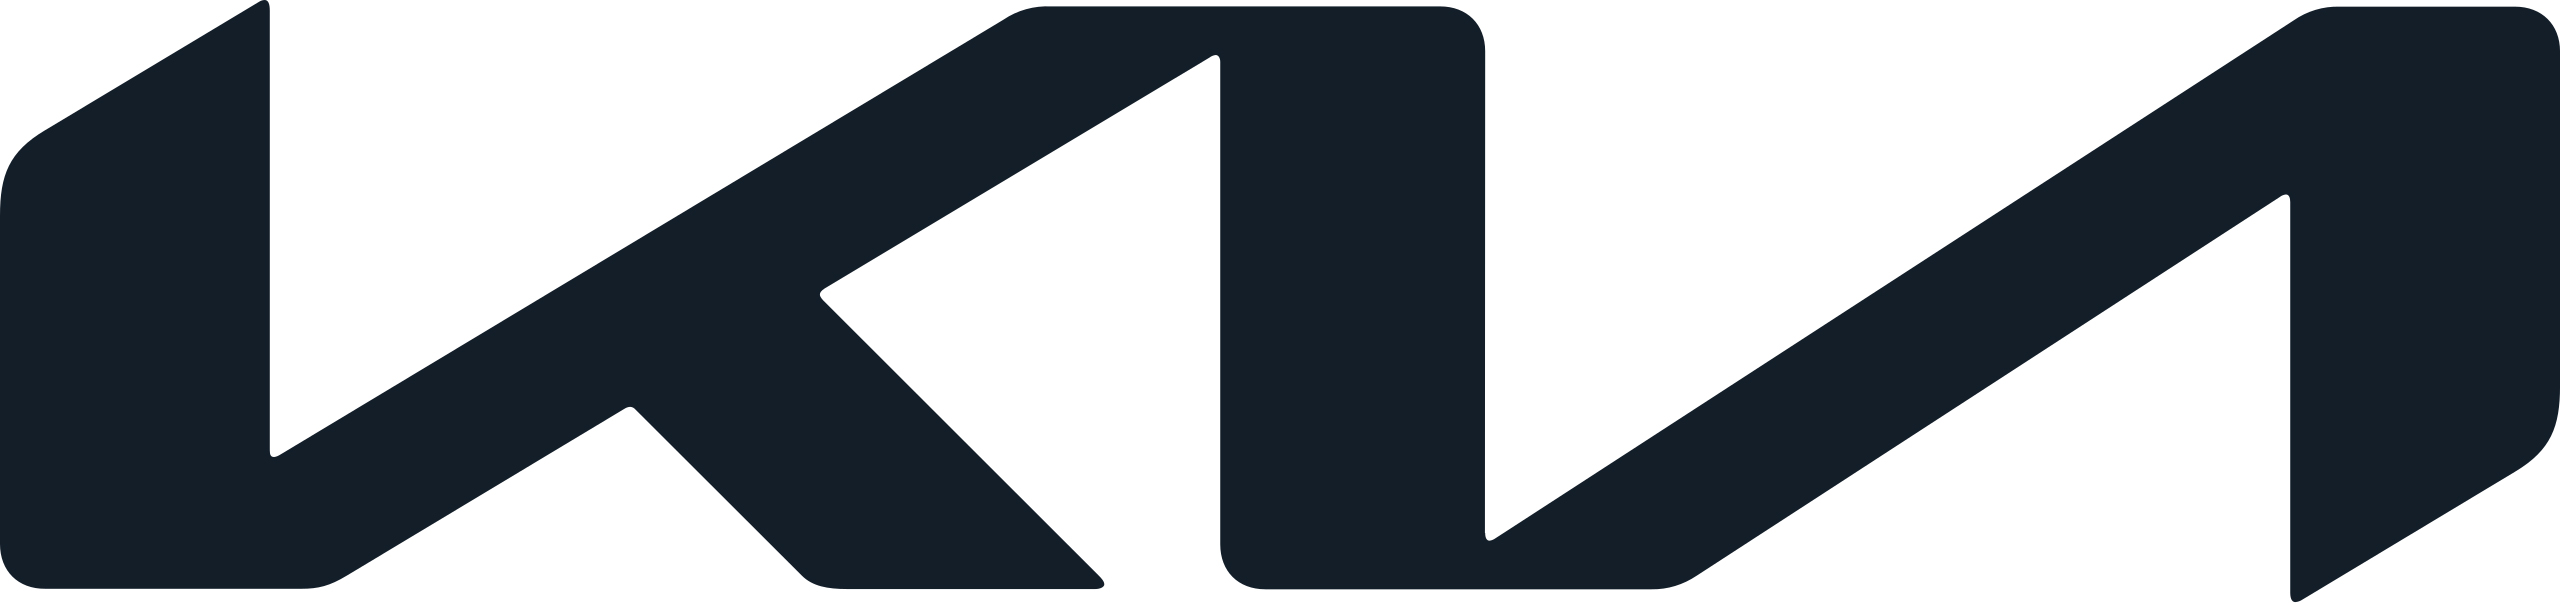 HLS-logo